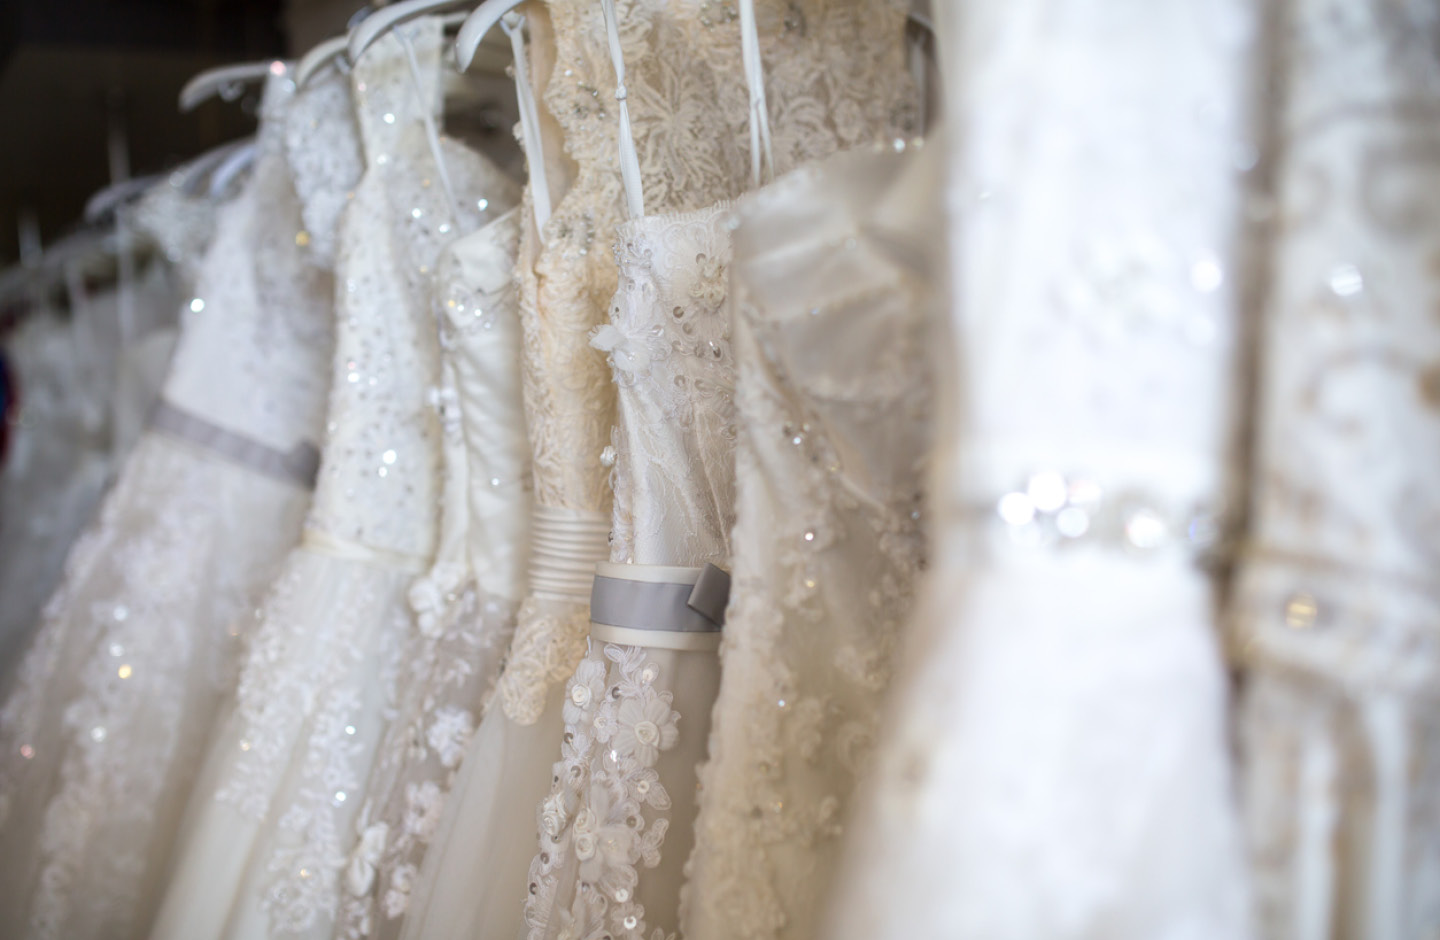 Bildausschnitt von Brautkleidern auf der Kleiderstange